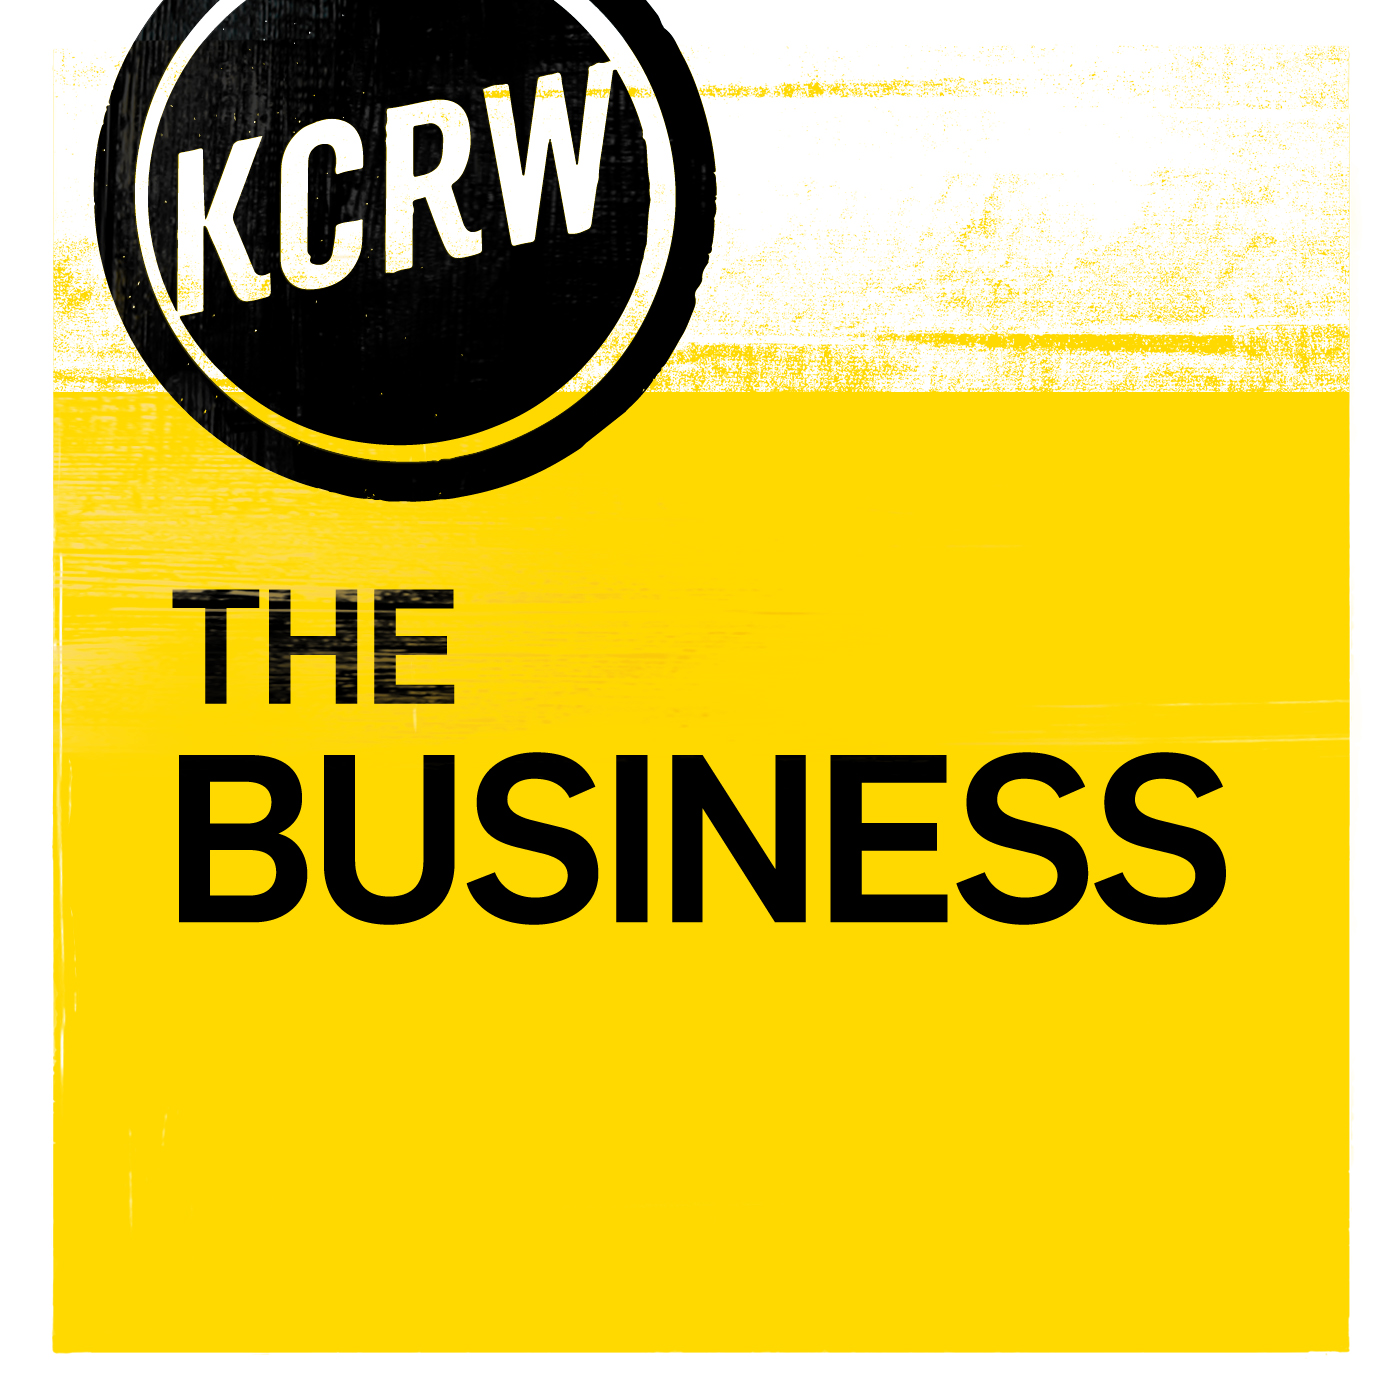 KCRW The Business 19915716.jpg